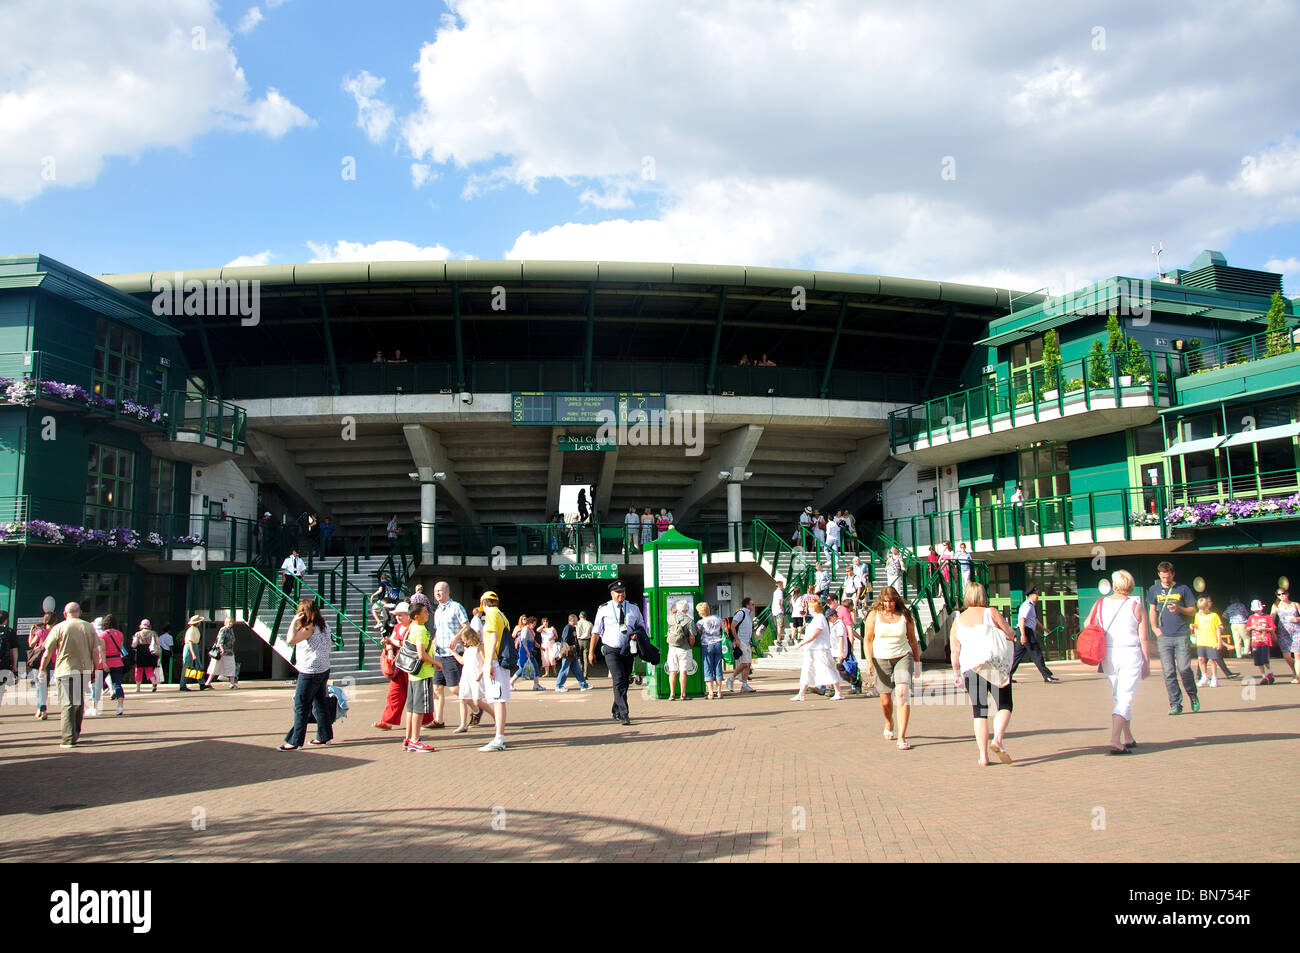 Une cour à l'extérieur, les Championnats, Wimbledon, Merton Borough, Greater London, Angleterre, Royaume-Uni Banque D'Images